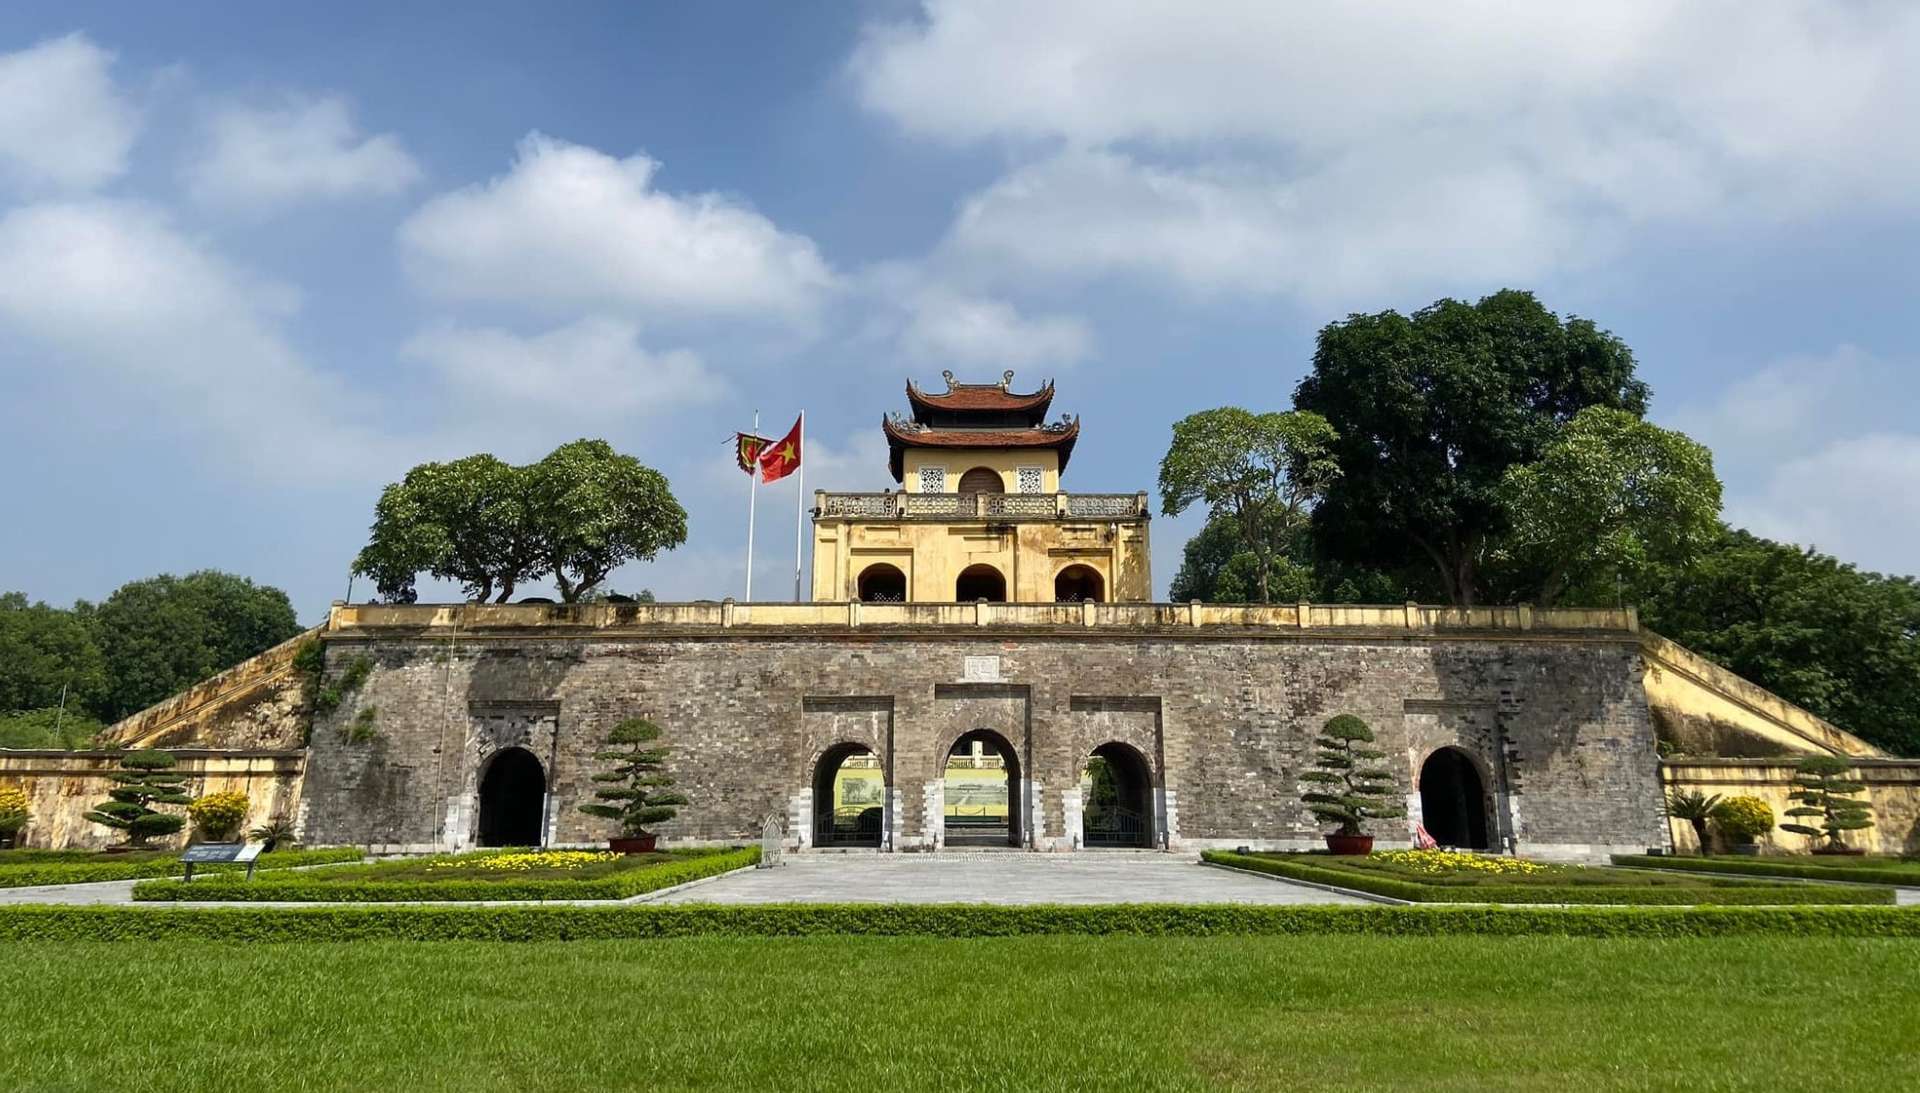 Nếu bạn là một người yêu lịch sử, bức ảnh này sẽ khiến bạn hào hứng. Hãy chiêm ngưỡng tòa thành vĩ đại Hoàng Thành Thăng Long và cột mốc lịch sử nổi tiếng, nơi đánh dấu sự phát triển của đất nước Việt Nam. Hãy xem ngay để khám phá thêm về lịch sử đất nước!